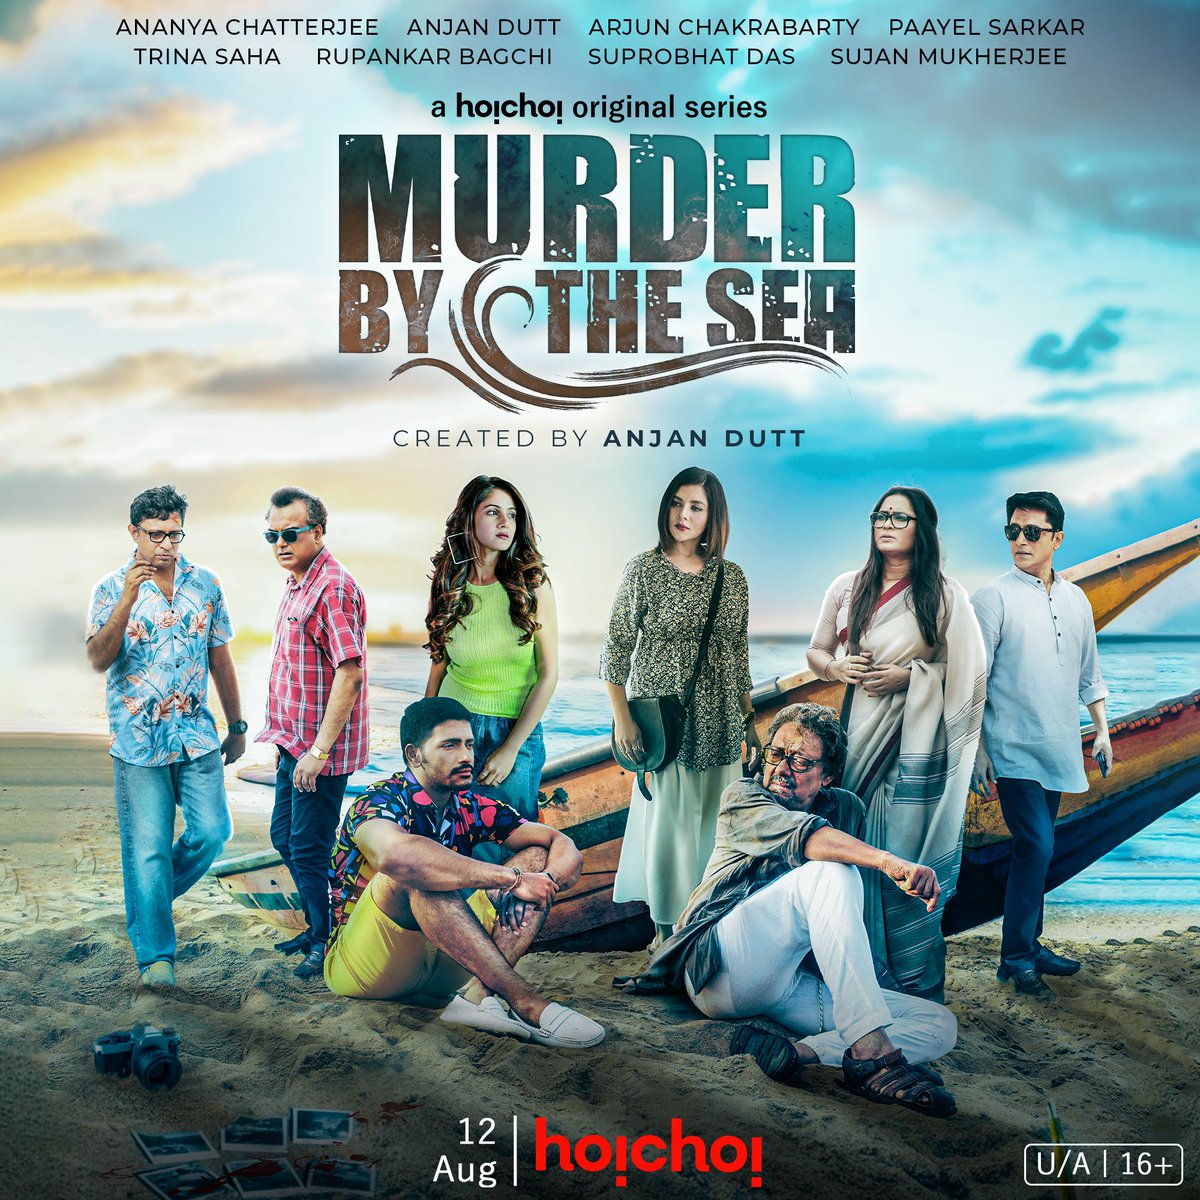 পুরীর সমুদ্রের ঢেউয়ে এবার ভেসে আসছে এক অদ্ভুত রহস্য! #MurderByTheSea: Official Poster | Series created by #AnjanDutt premieres 12th August, only on @hoichoitv .